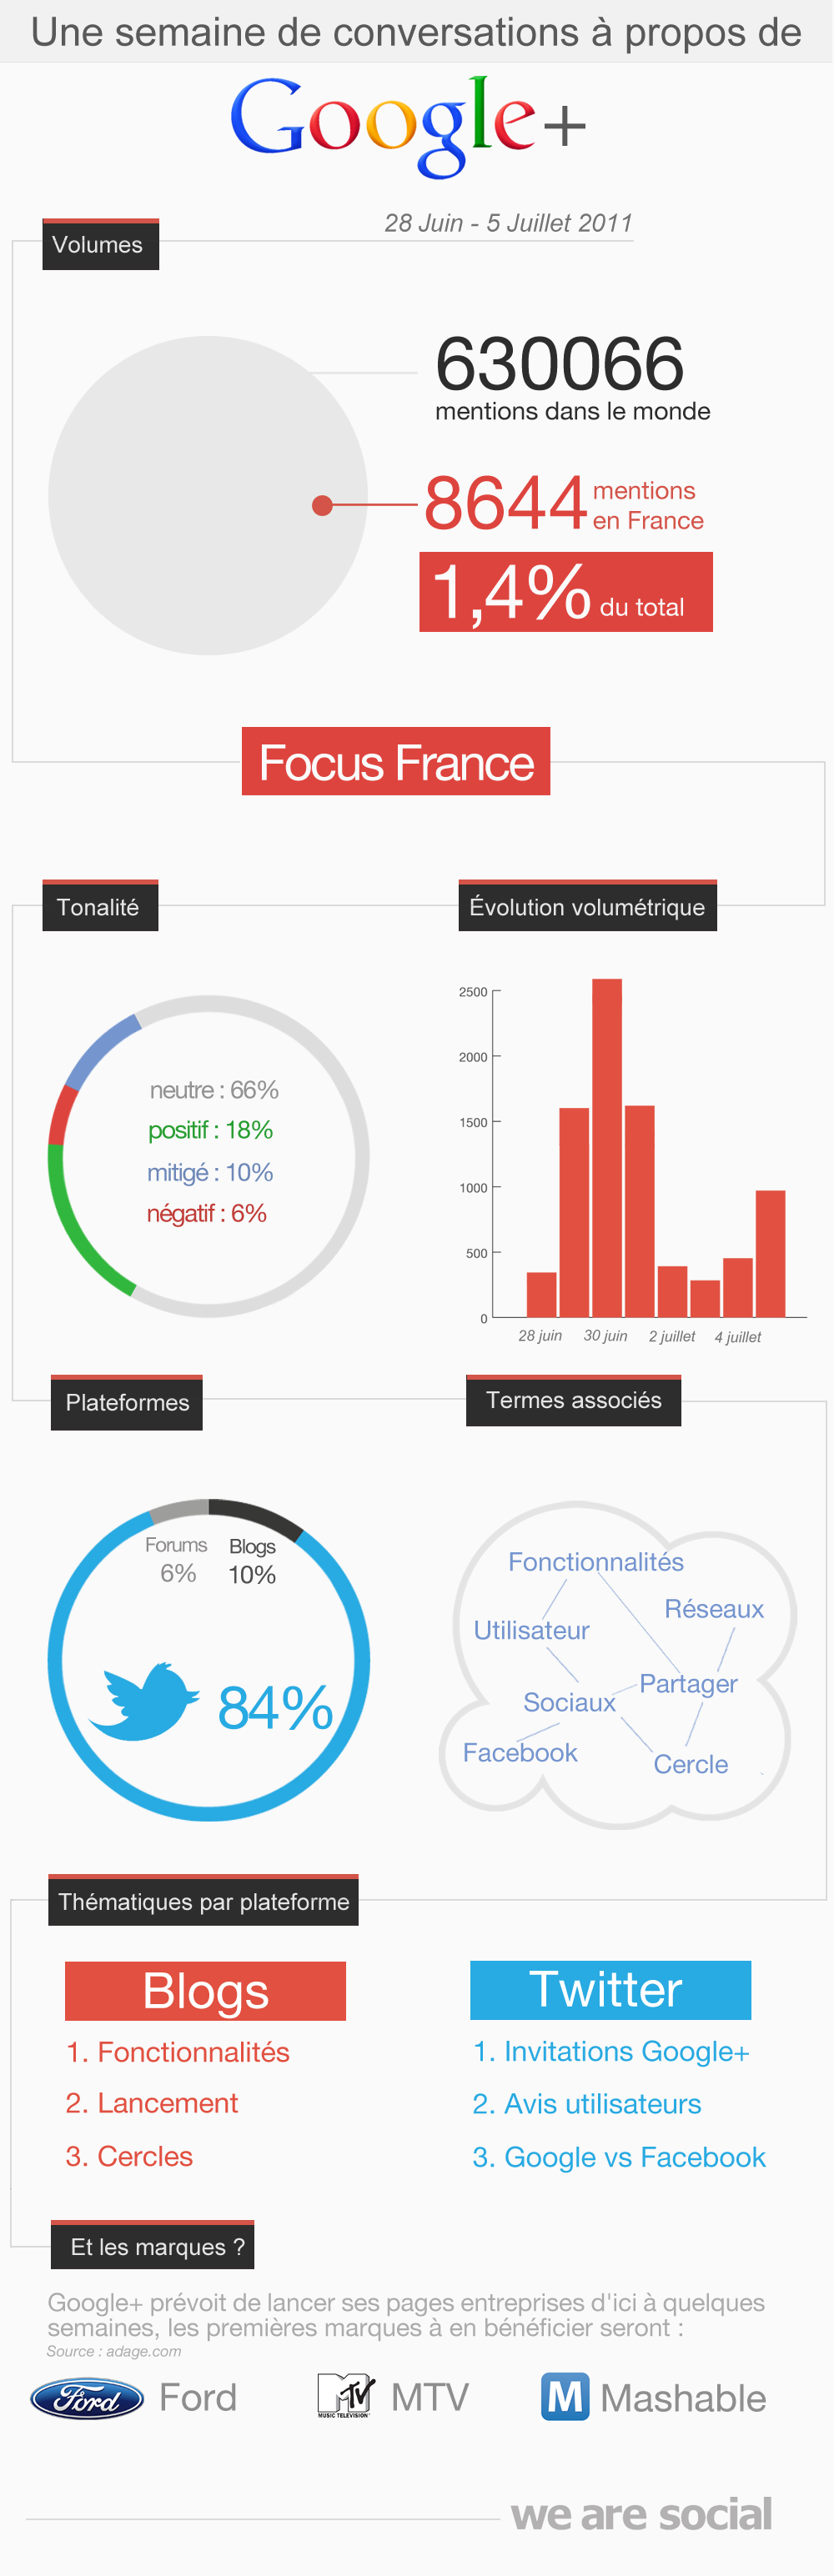 L’accueil de Google+ en France